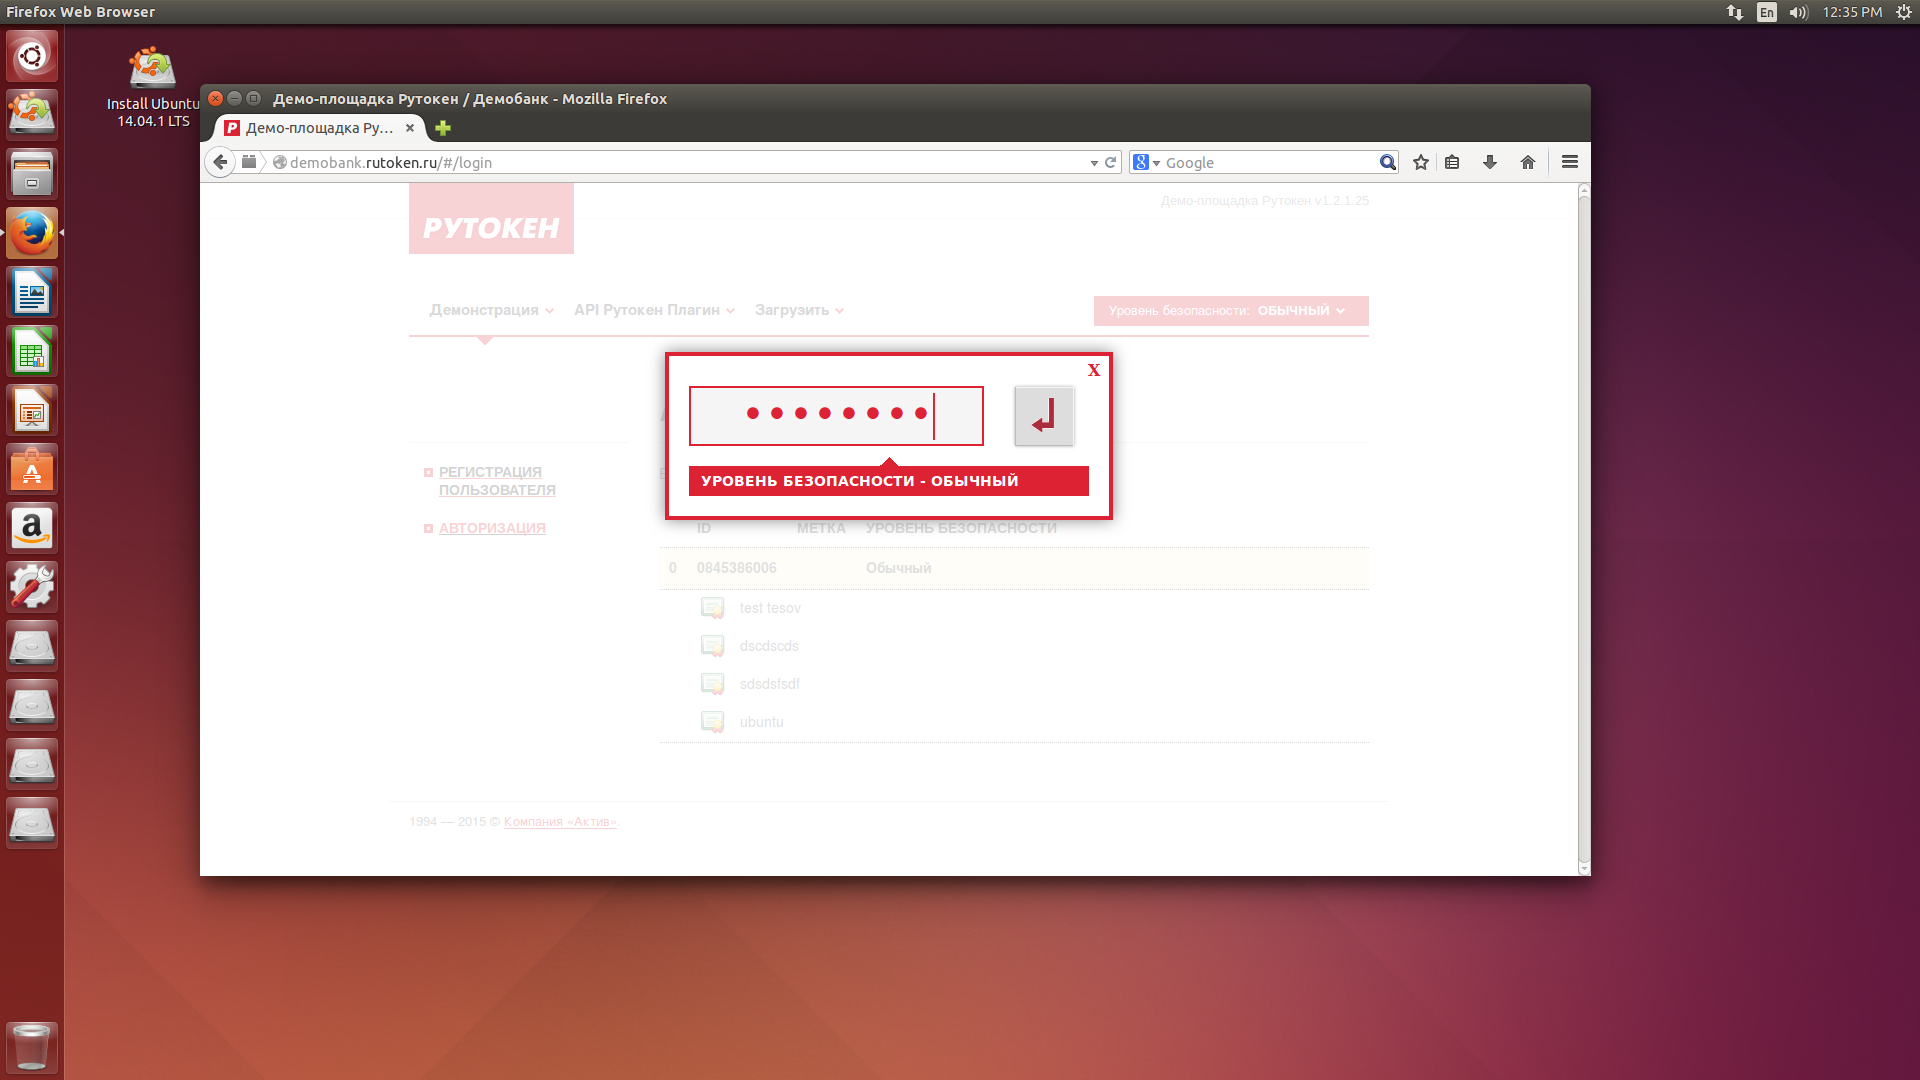 Электронная подпись в доверенной среде на базe загрузочной Ubuntu 14.04 LTS и Рутокен ЭЦП Flash - 8